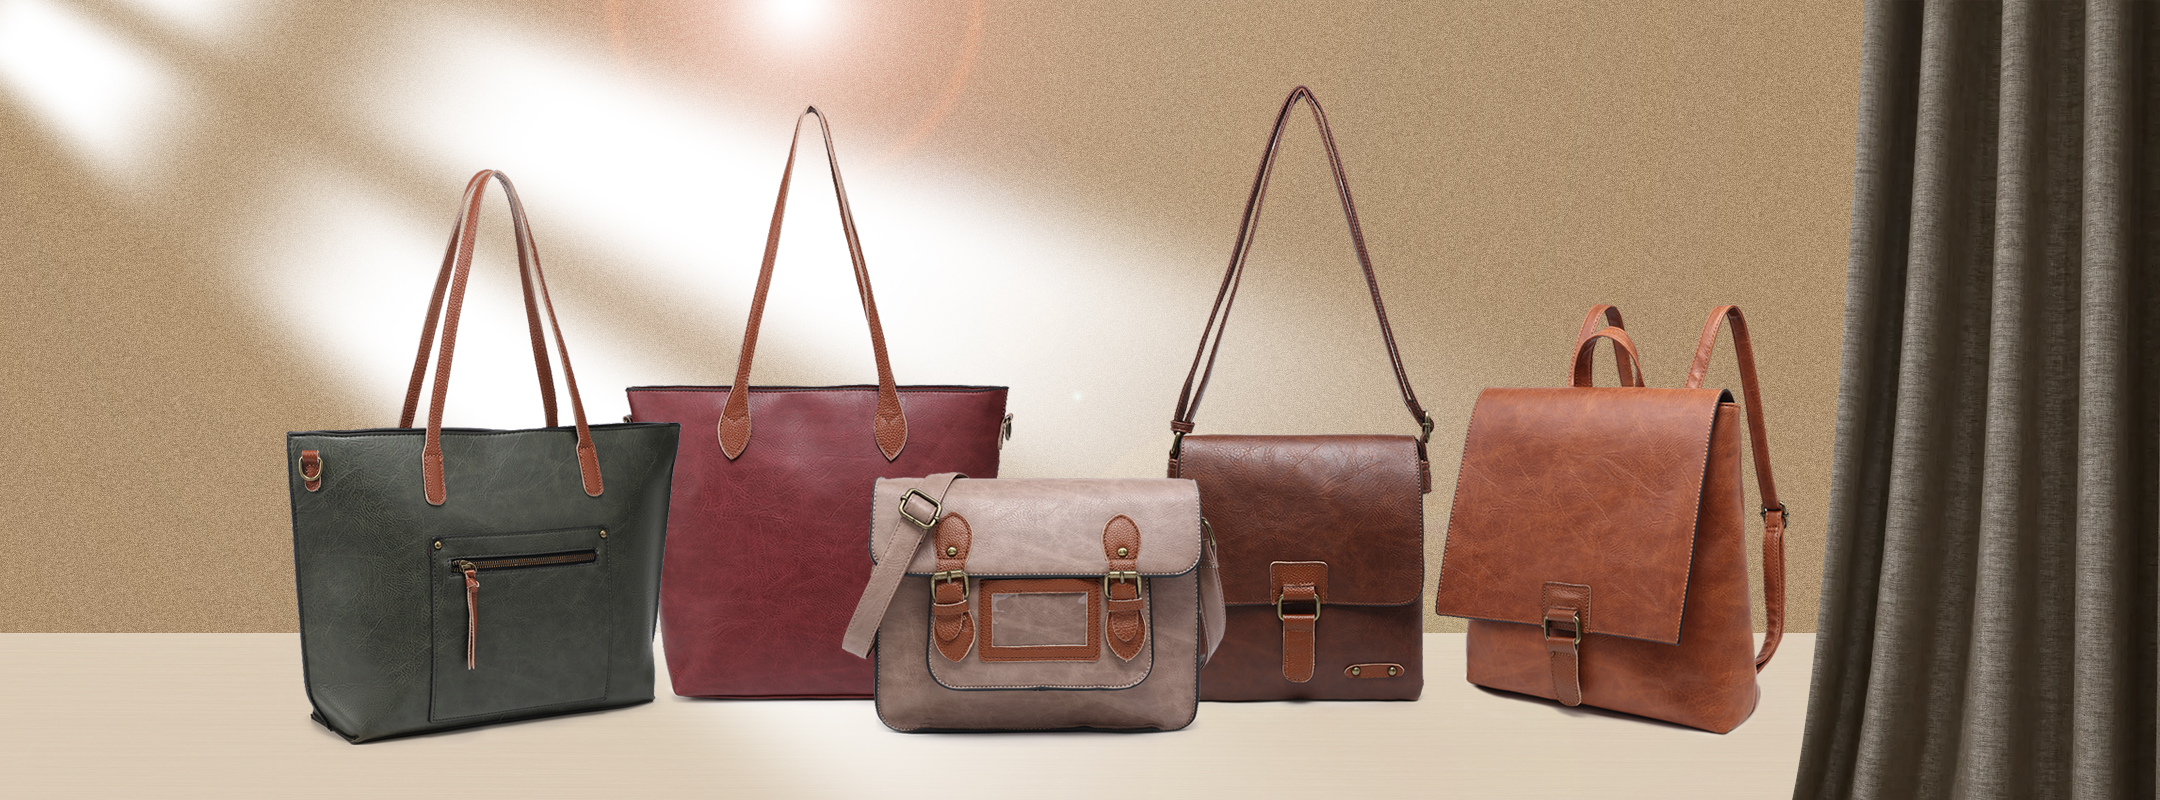 Wholesale Handbags Suppliers in UAE | Bags, Women handbags, Wholesale  handbags